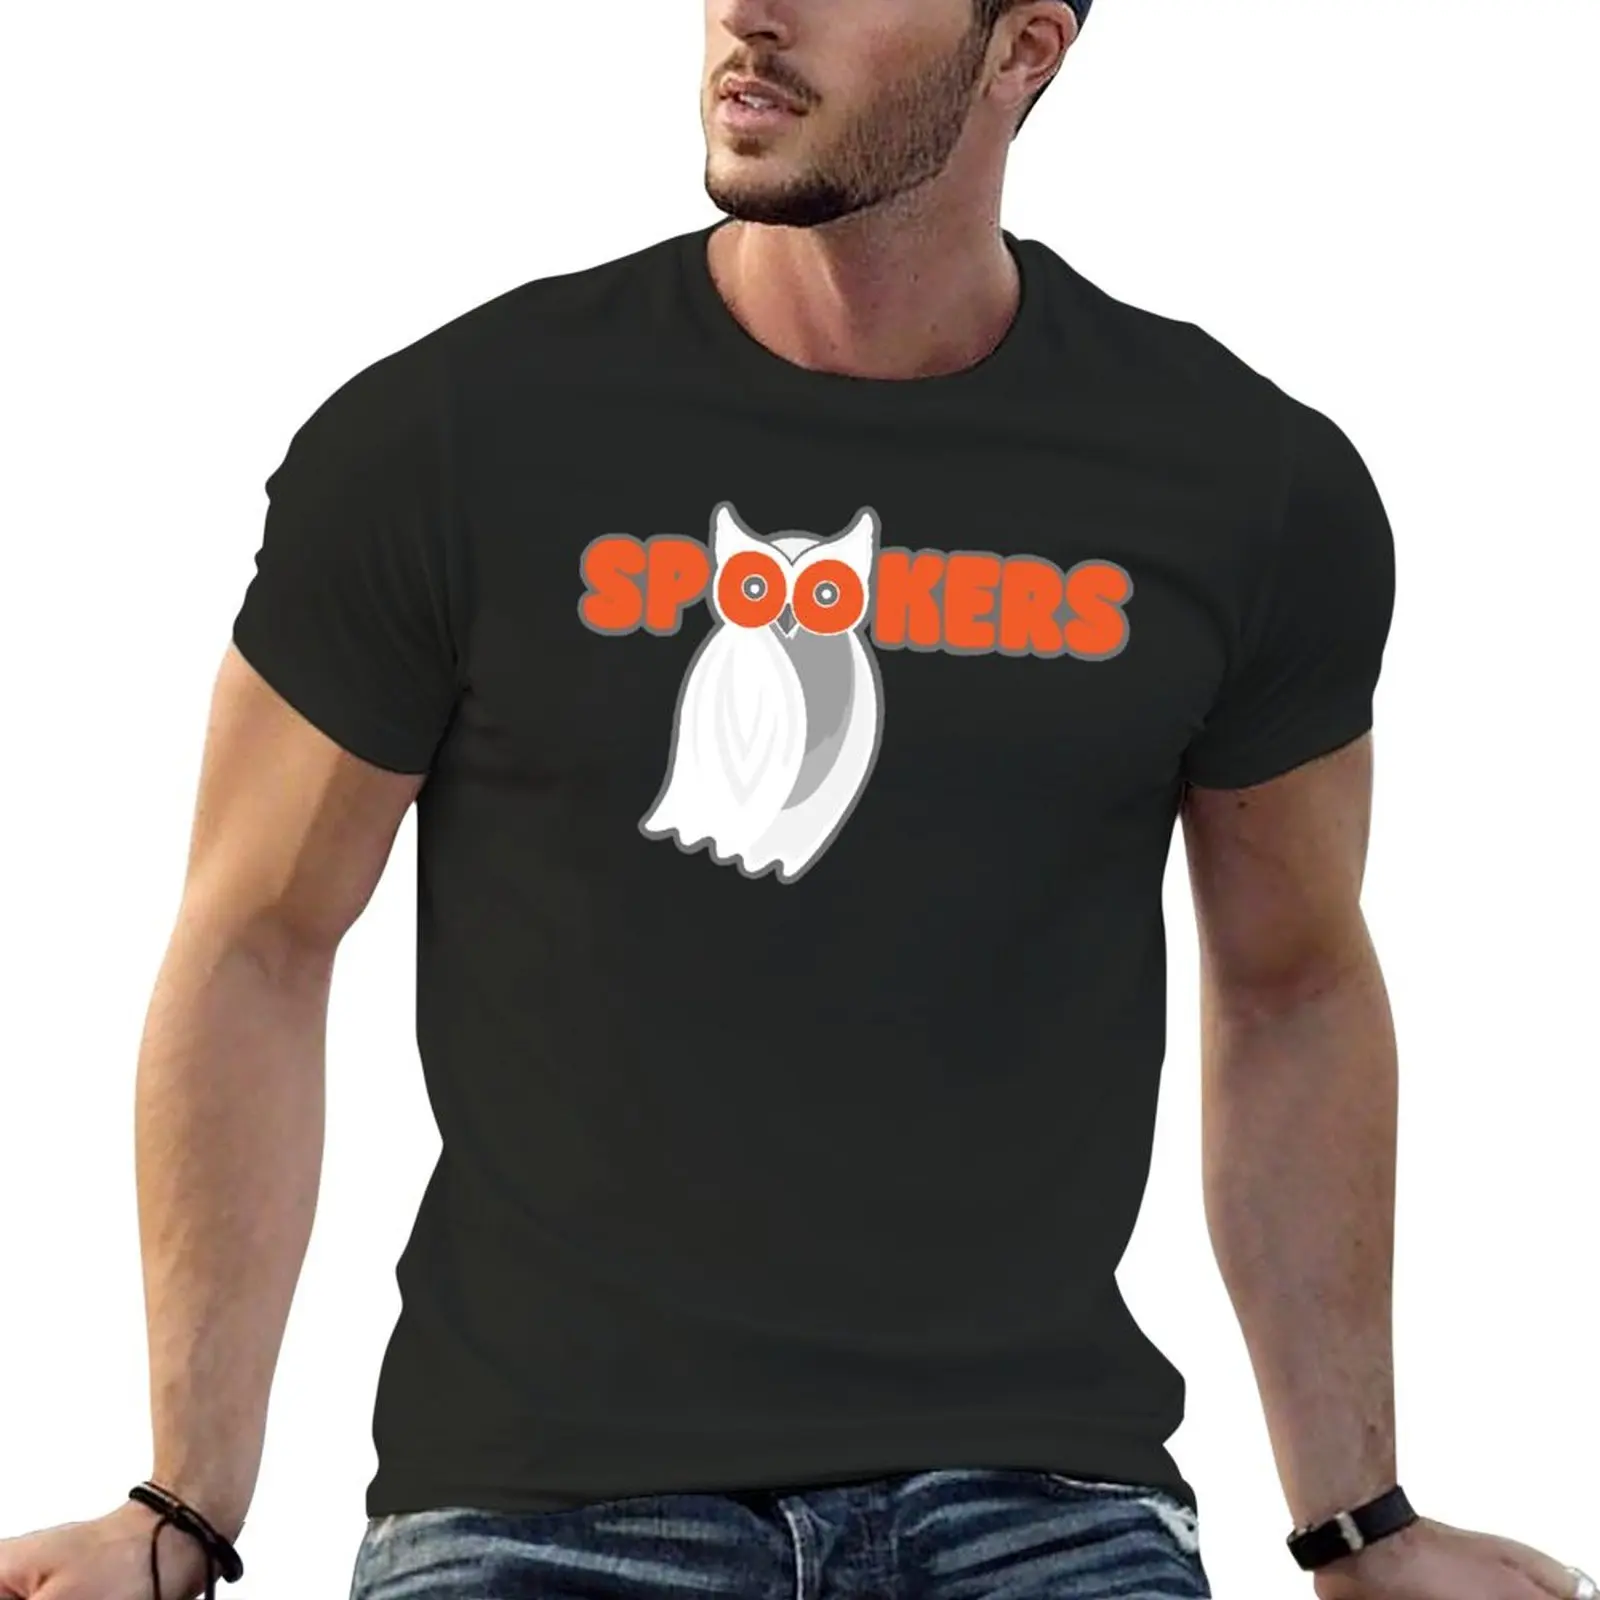 Футболка с логотипом Spookers (Призрачная сова), короткая футболка, корейские модные футболки с графическим рисунком, черные футболки для мужчин Изображение 0